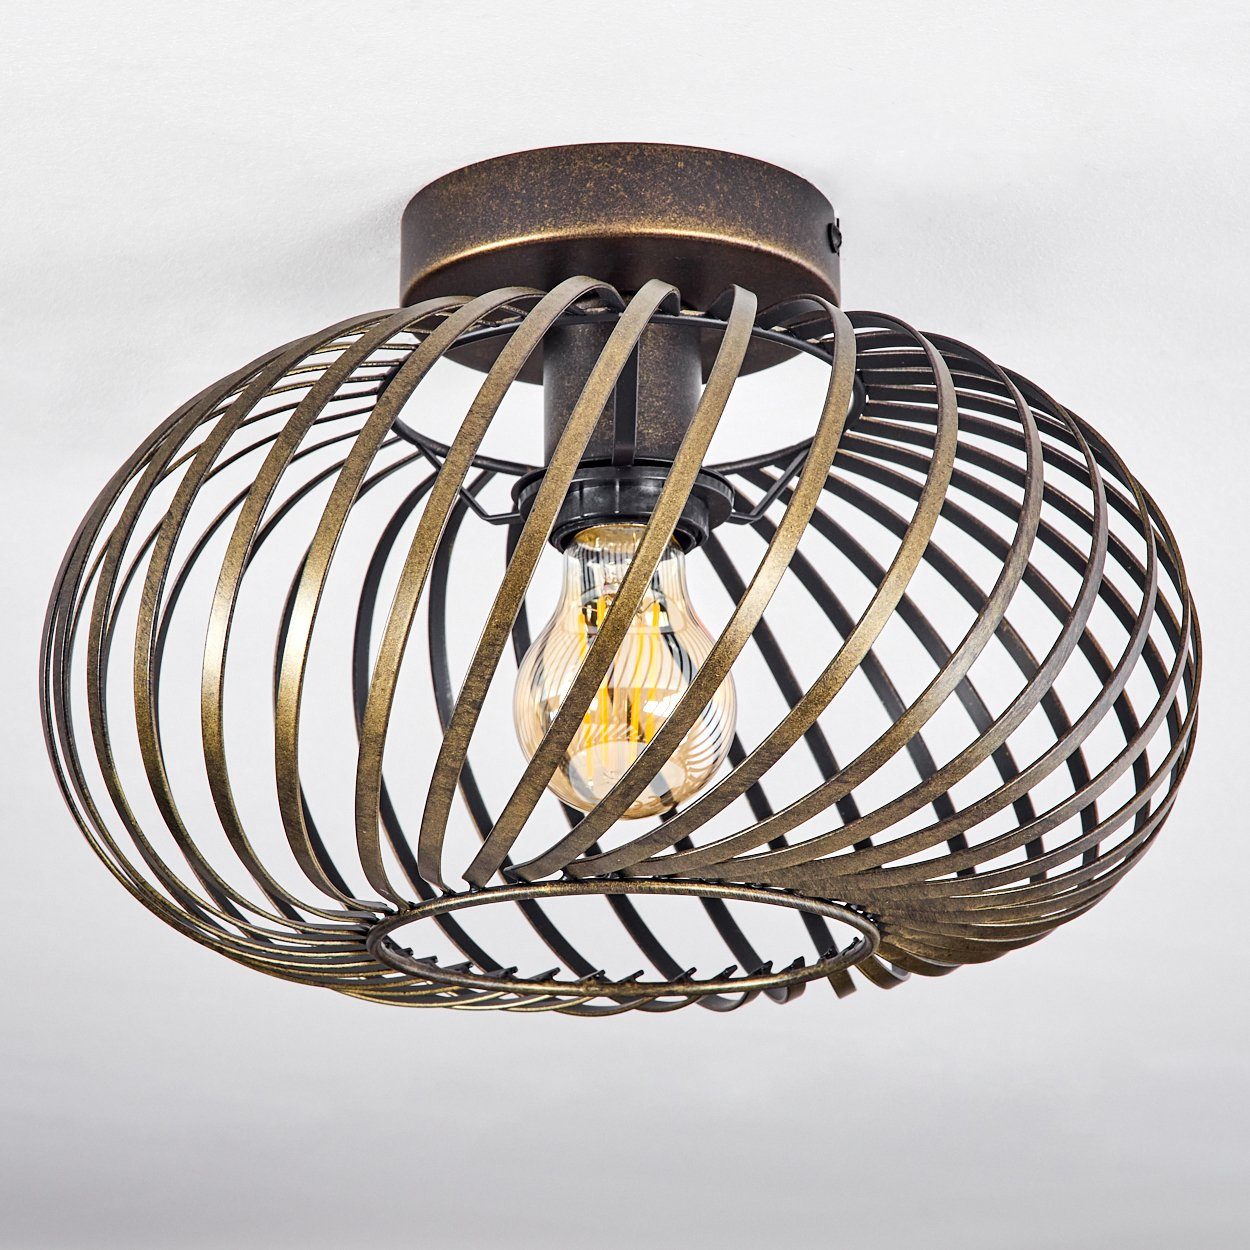 Vintage-Design Deckenleuchte Metall Deckenlampe E27, »Aidone« runde Lichteffekt, Goldfarben-antik/Schwarz, aus Leuchte in mit Gitter-Optik Leuchtmittel, im hofstein Ø30cm, ohne